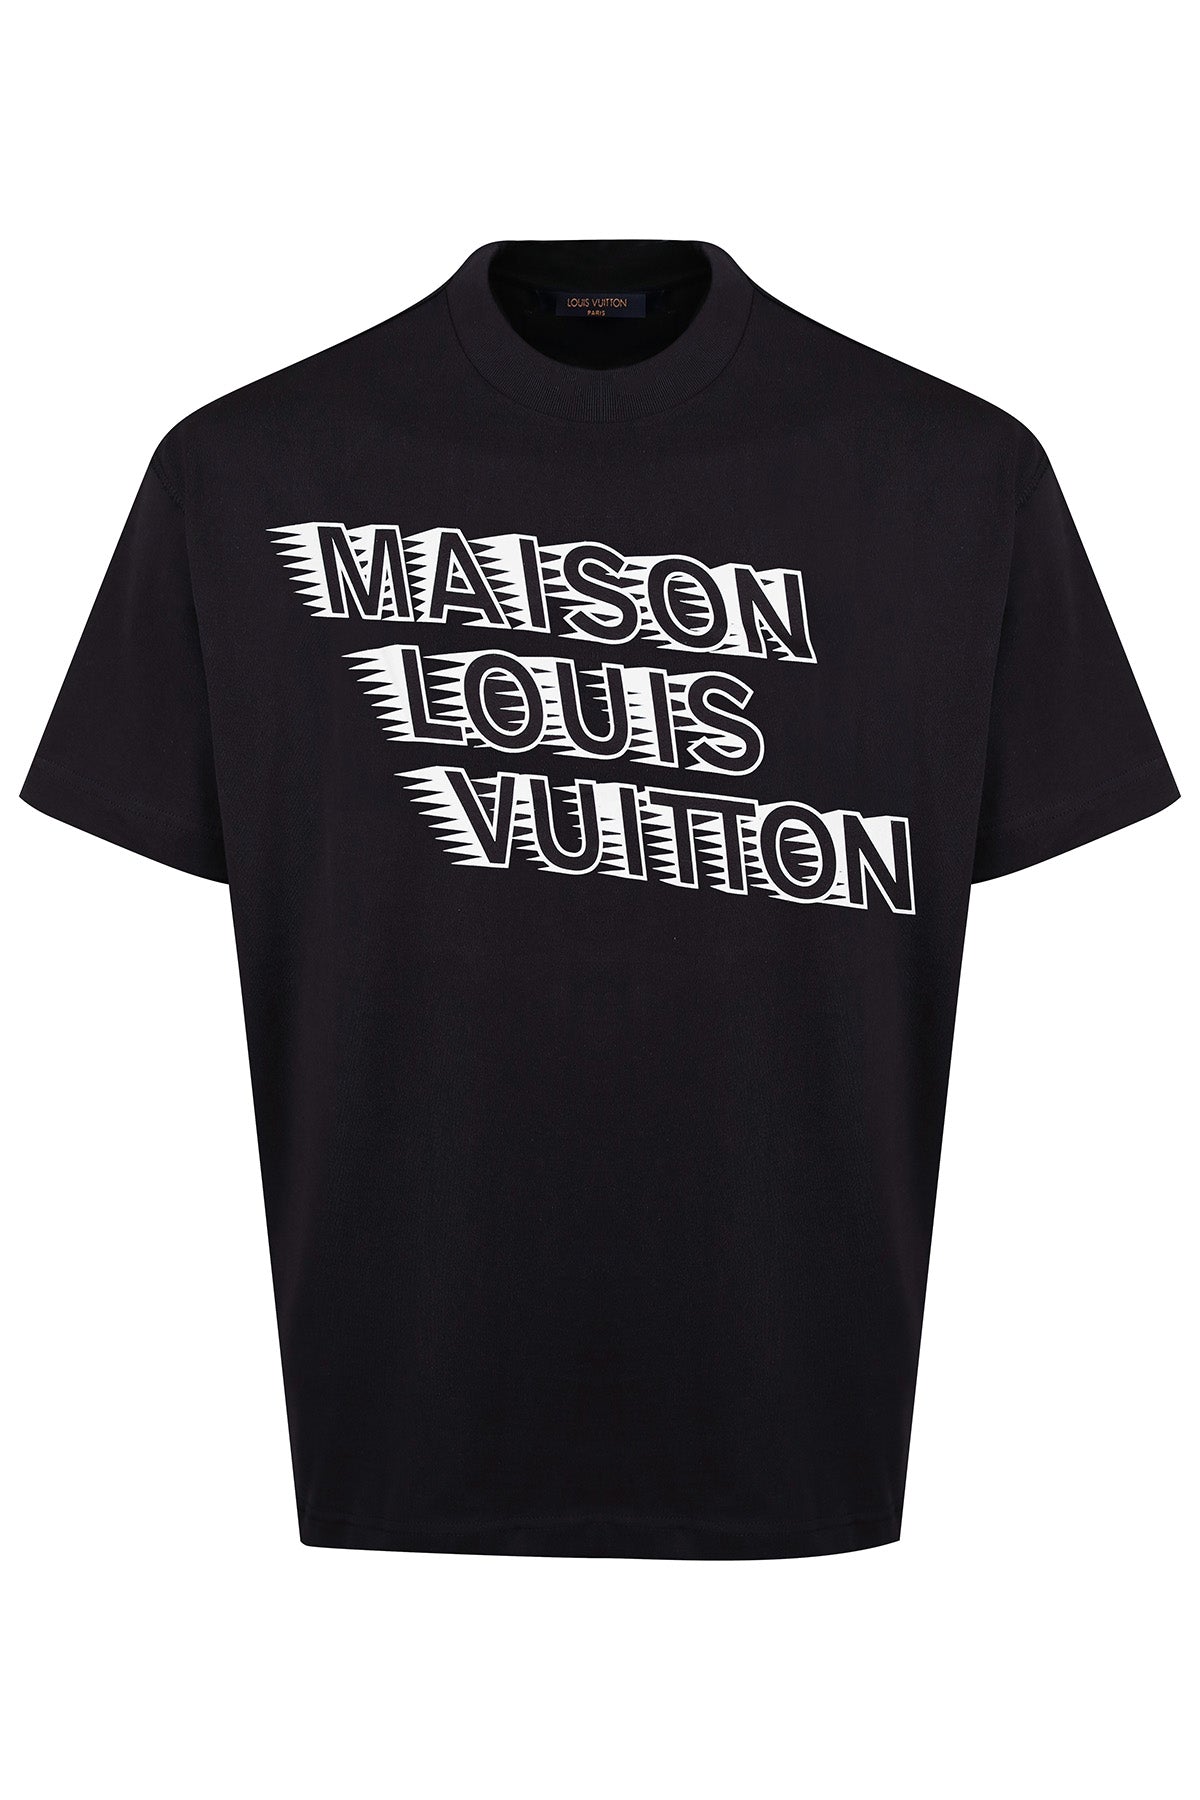 LOUIS VUITTON MAISON LV BLACK T-SHIRT